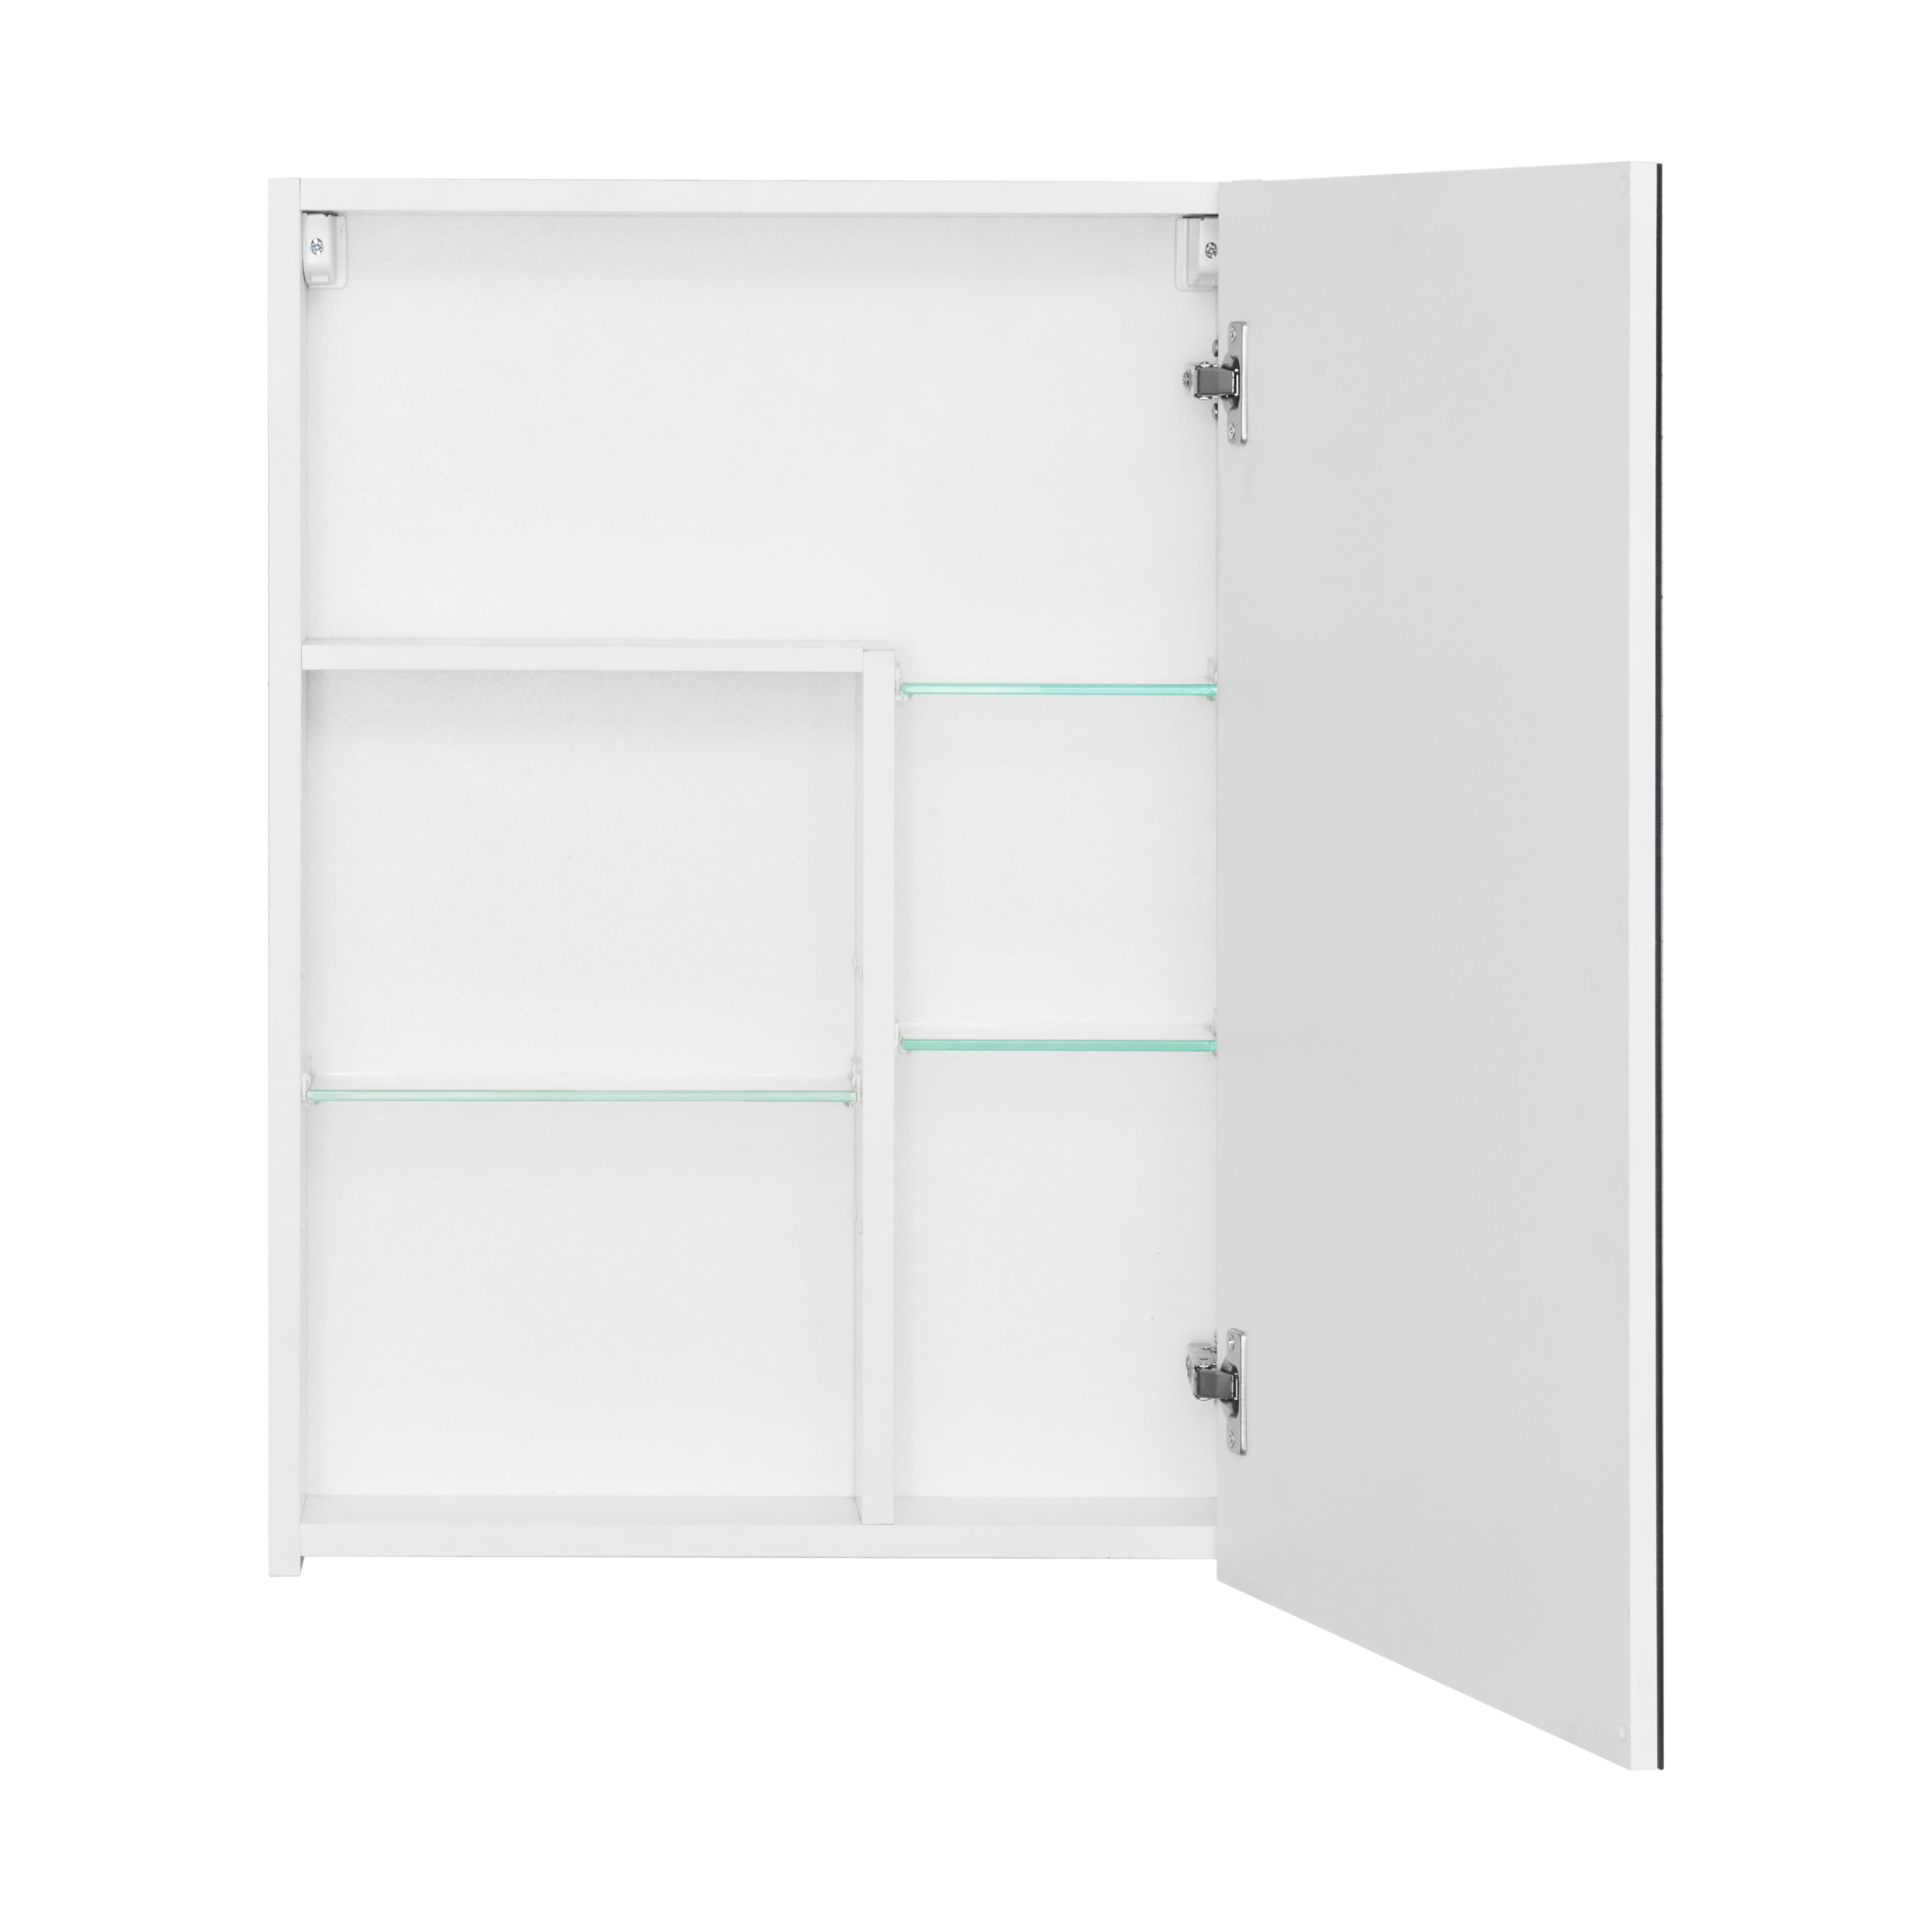 Зеркальный шкаф 50 см Aquaton Асти 1A263302AX010, белый